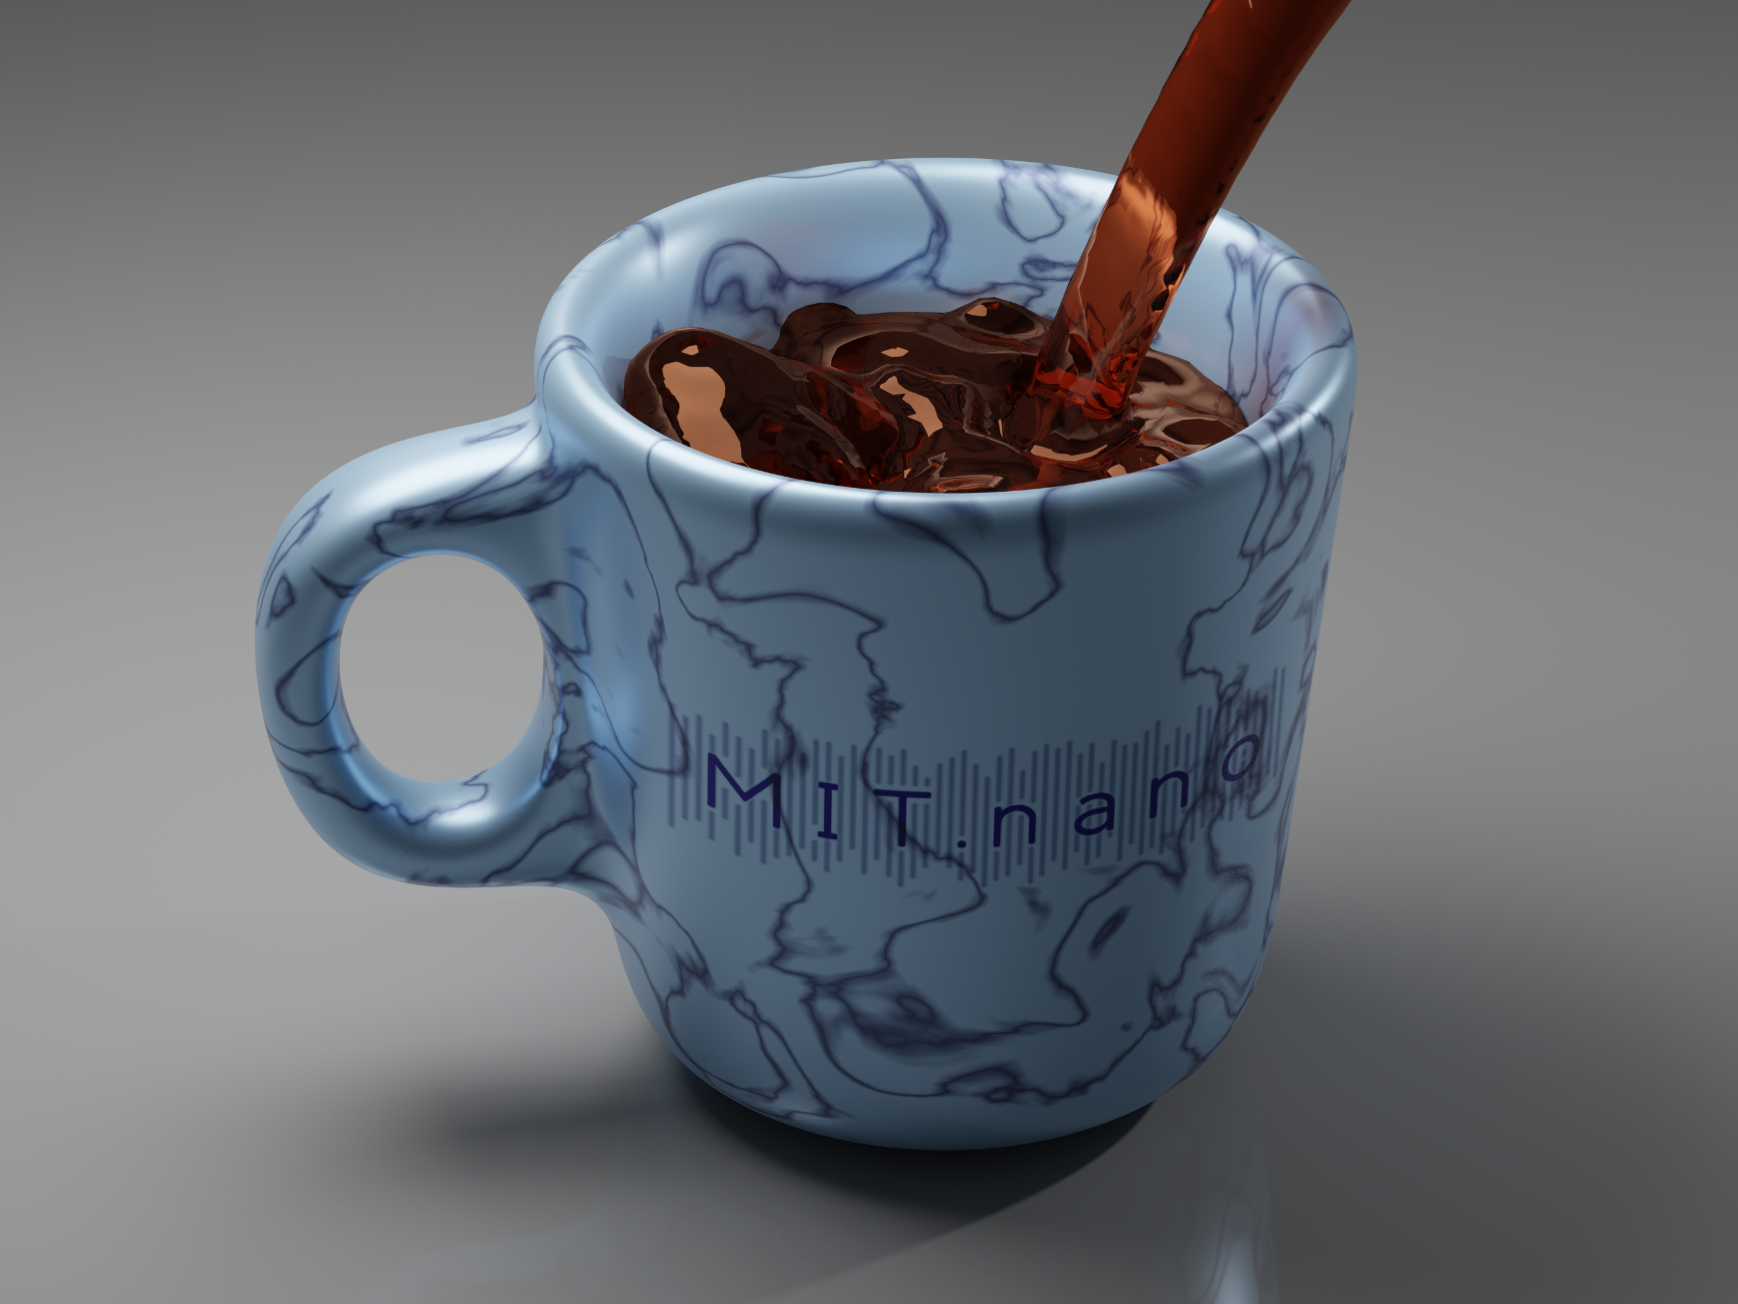 A mug created in blender